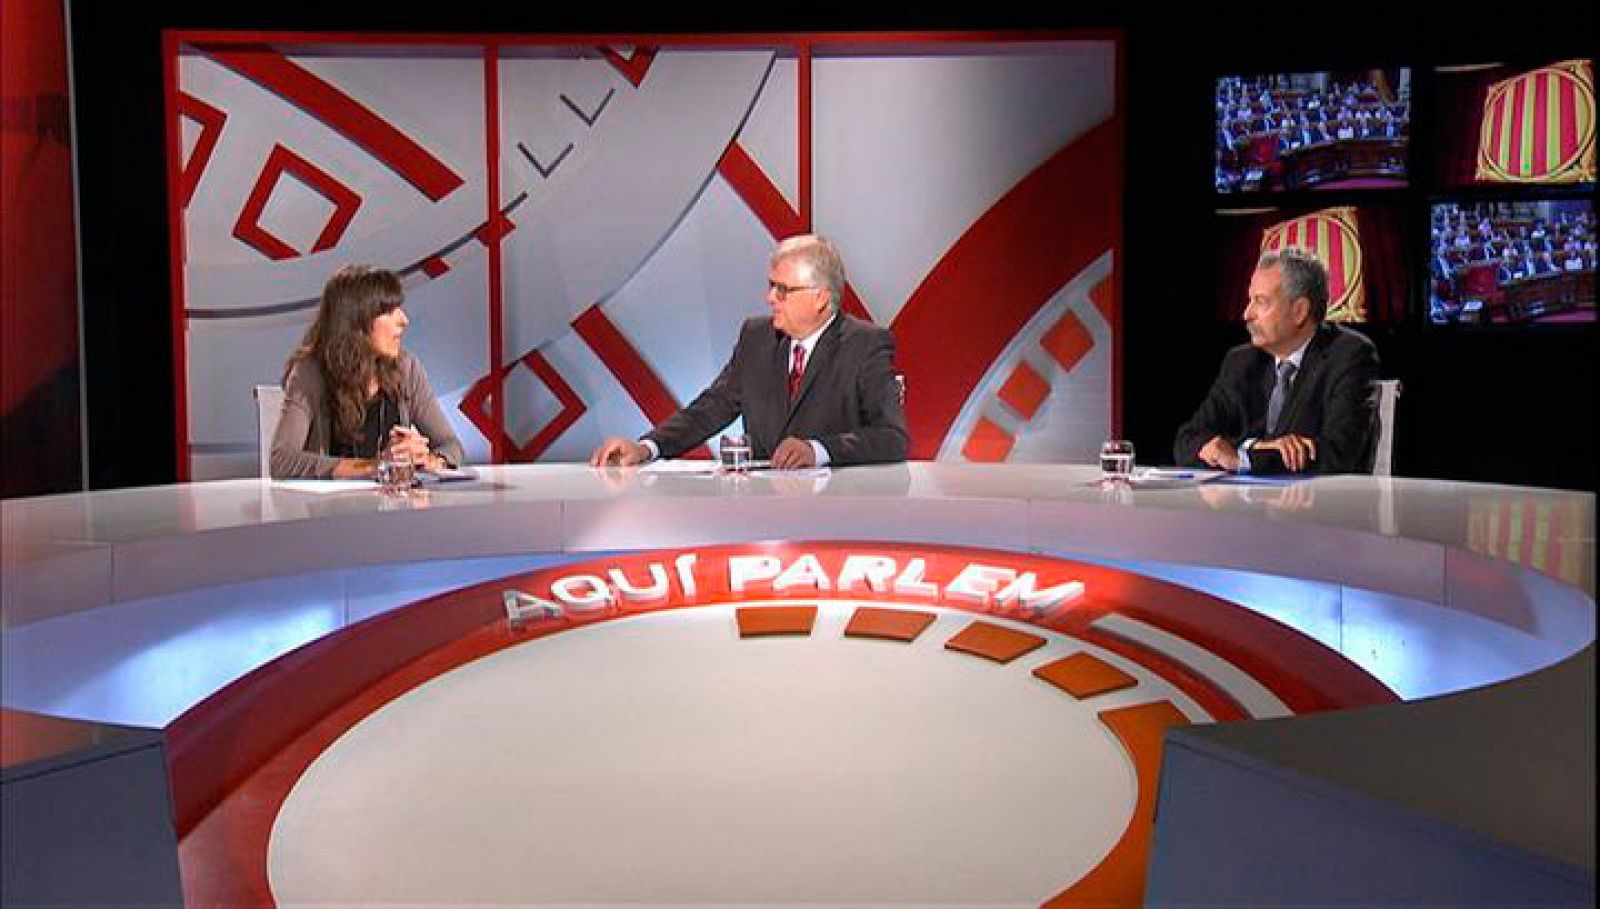 Aquí parlem: El debat de política general | RTVE Play